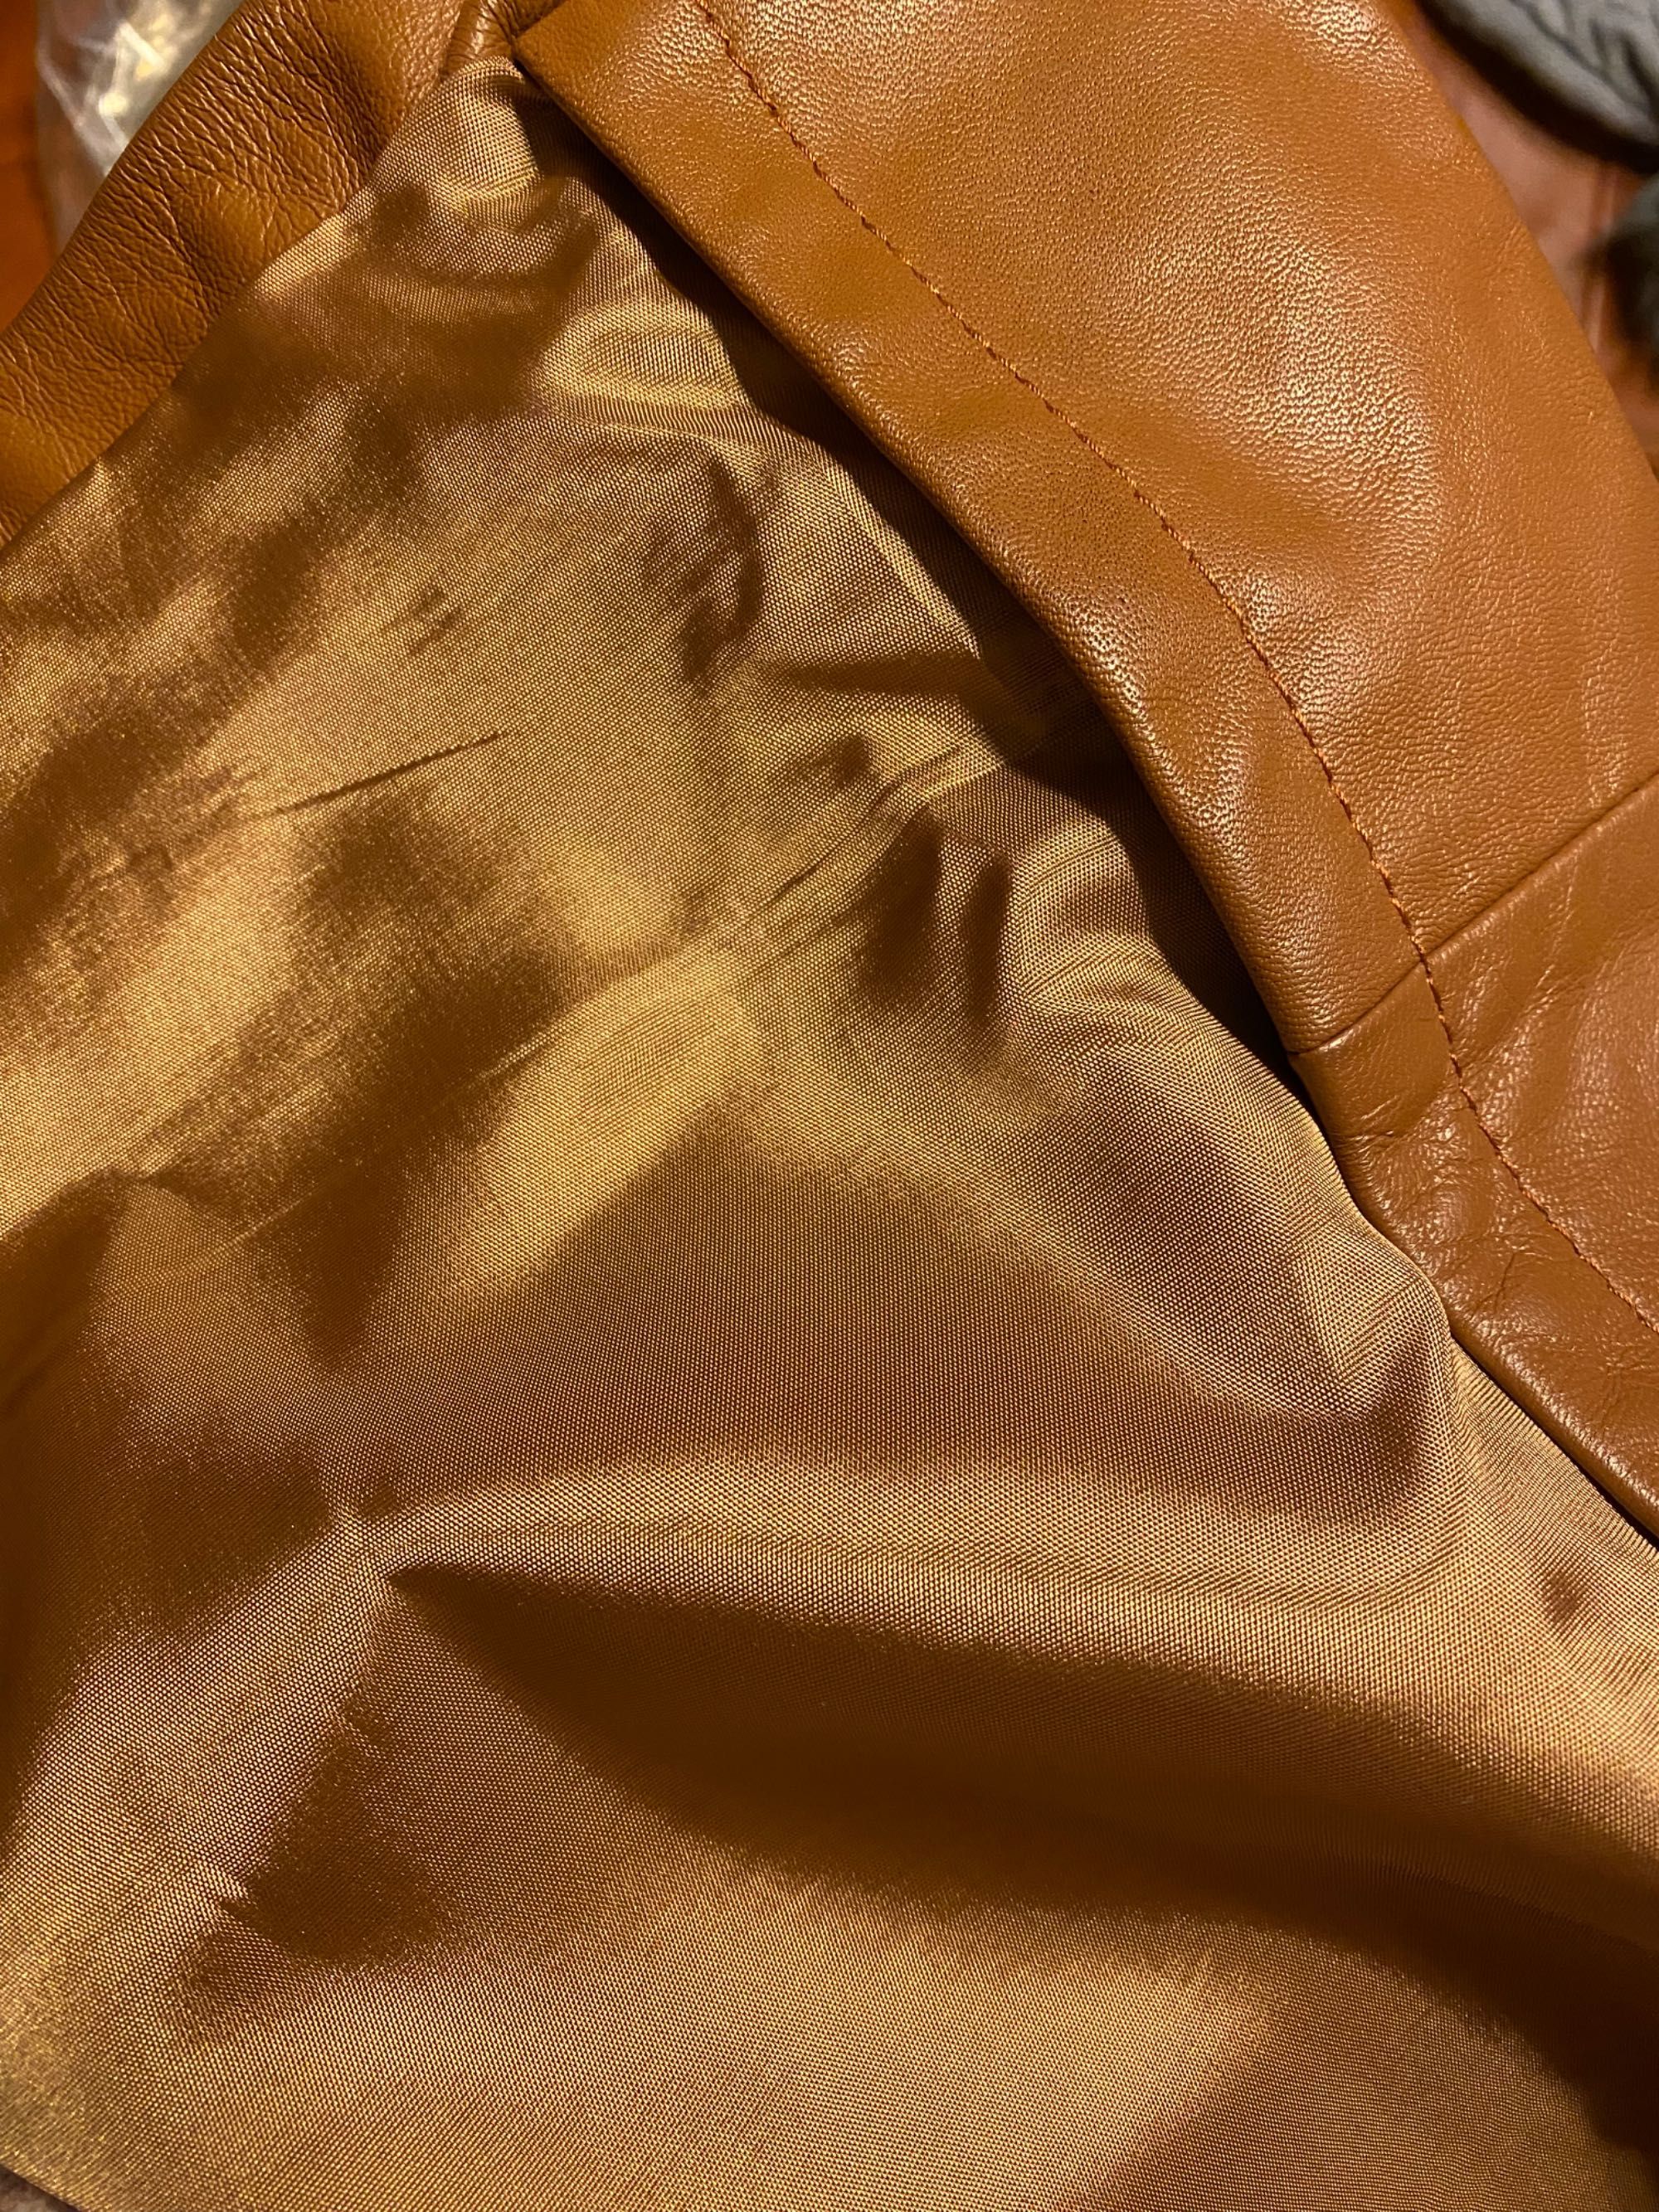 Piękny modny płaszcz skórzany brązowy z podszewką